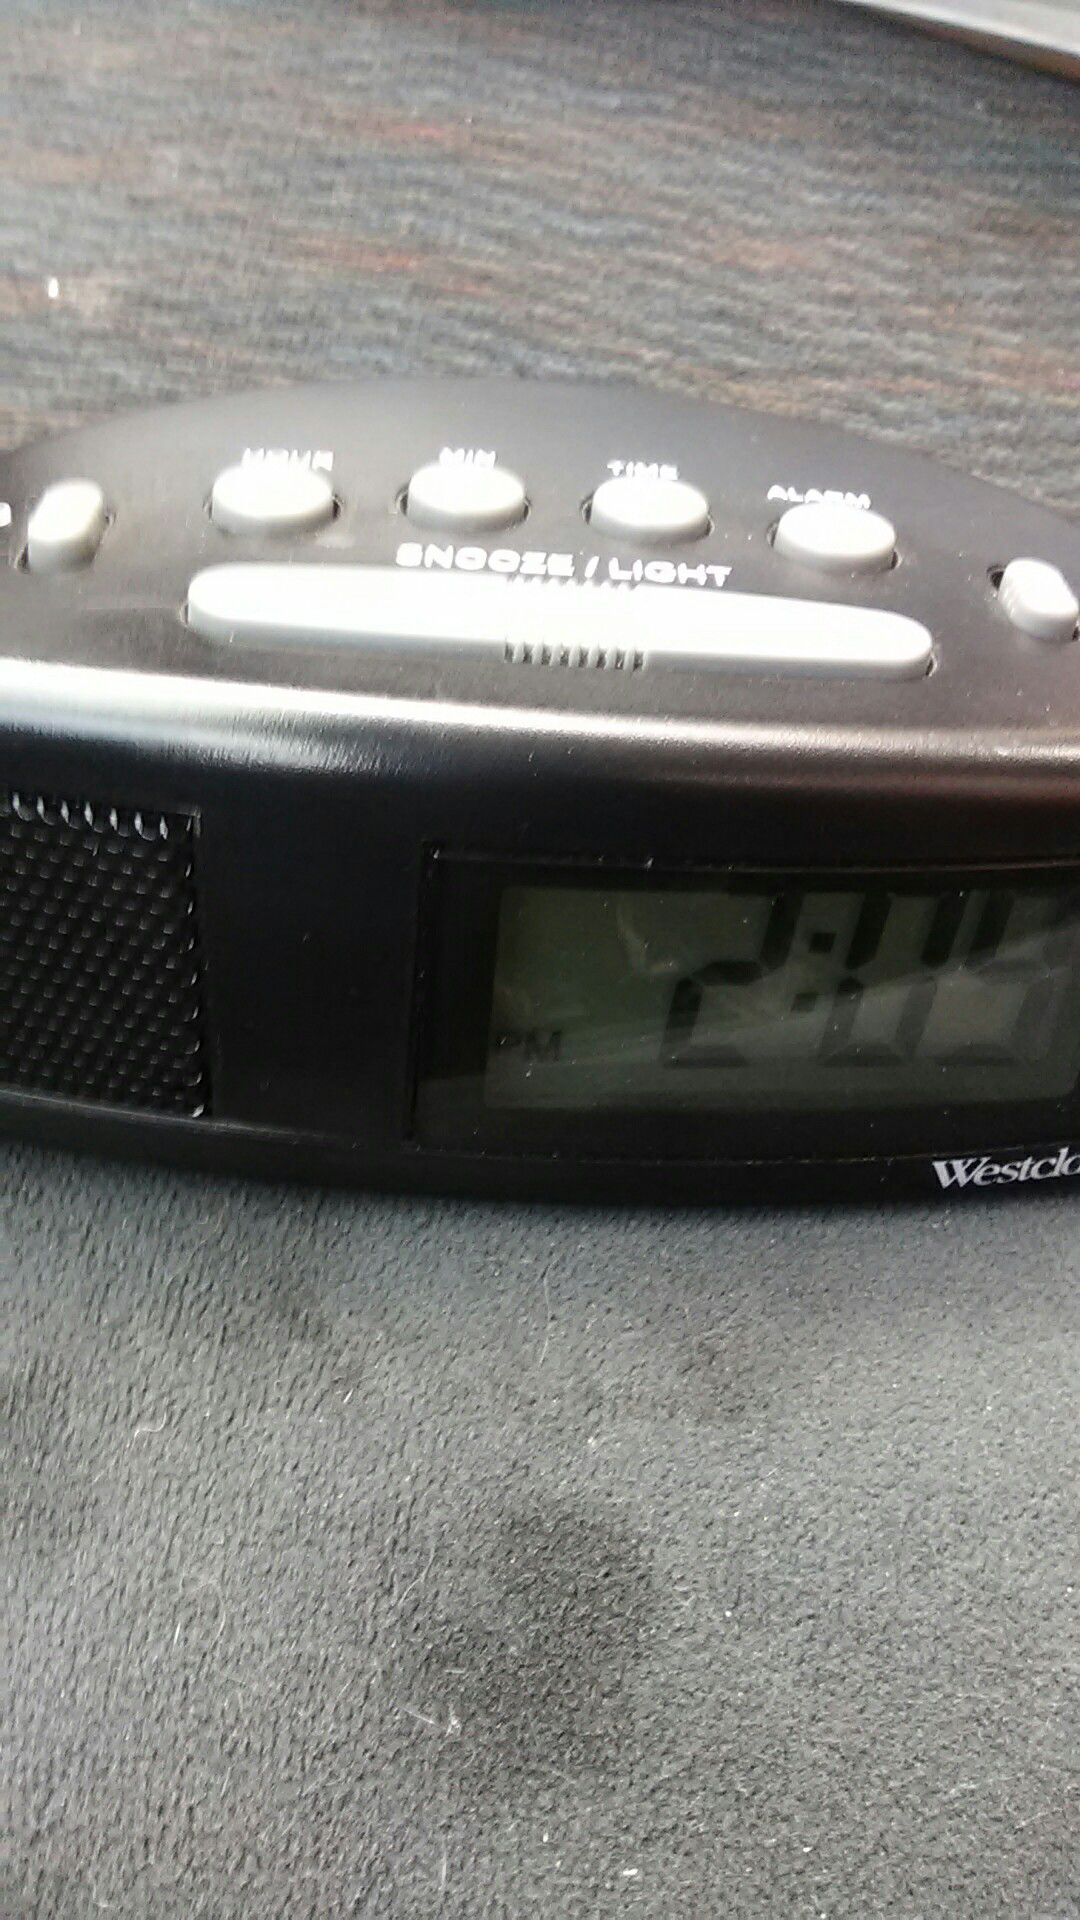 Westclox battery operated alarm clock